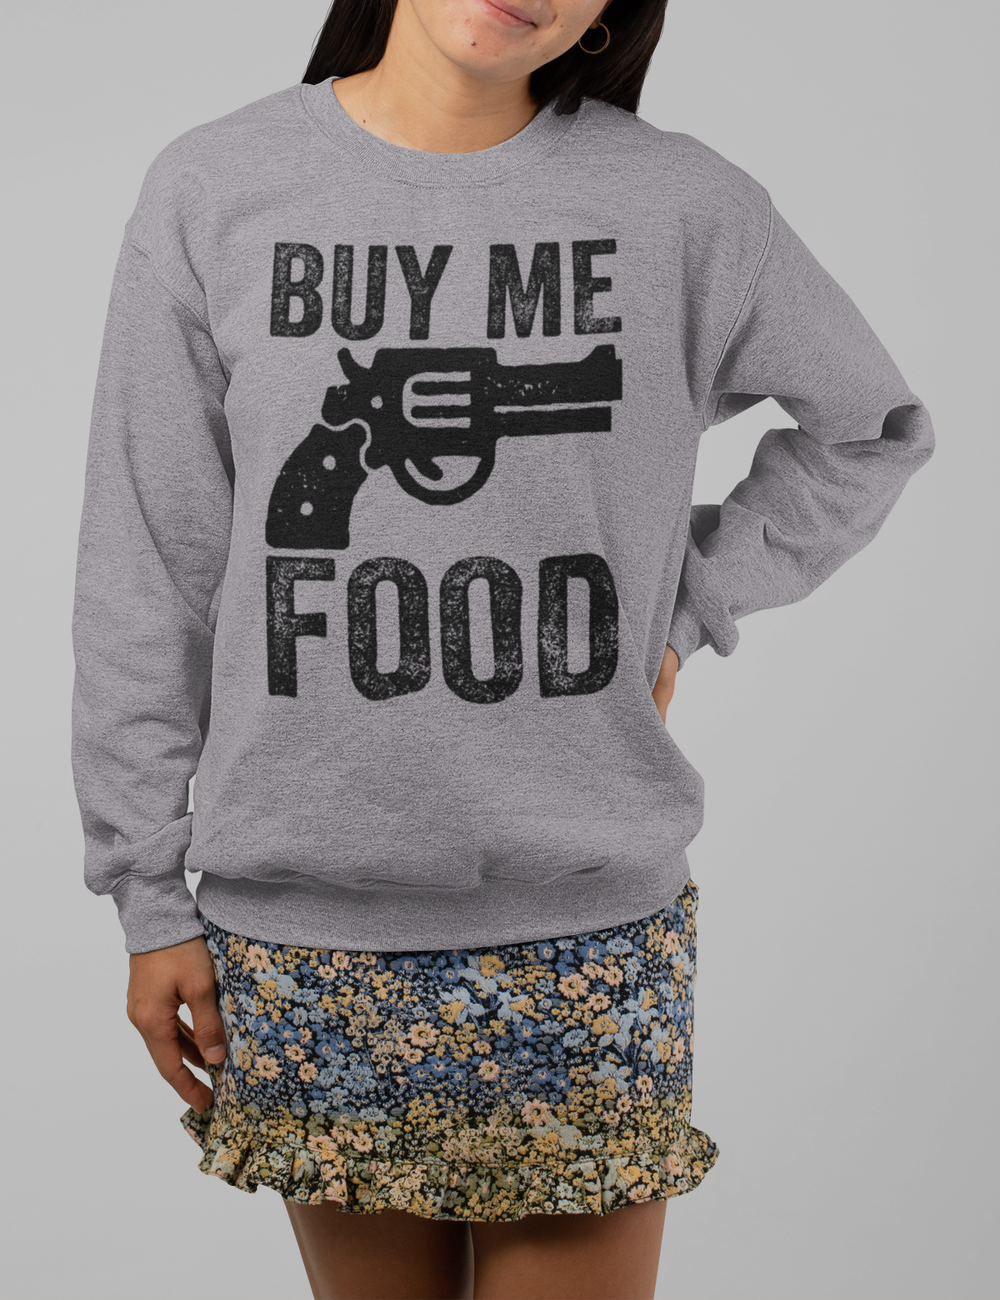 Buy Me Food Women's Crewneck Sweatshirt OniTakai